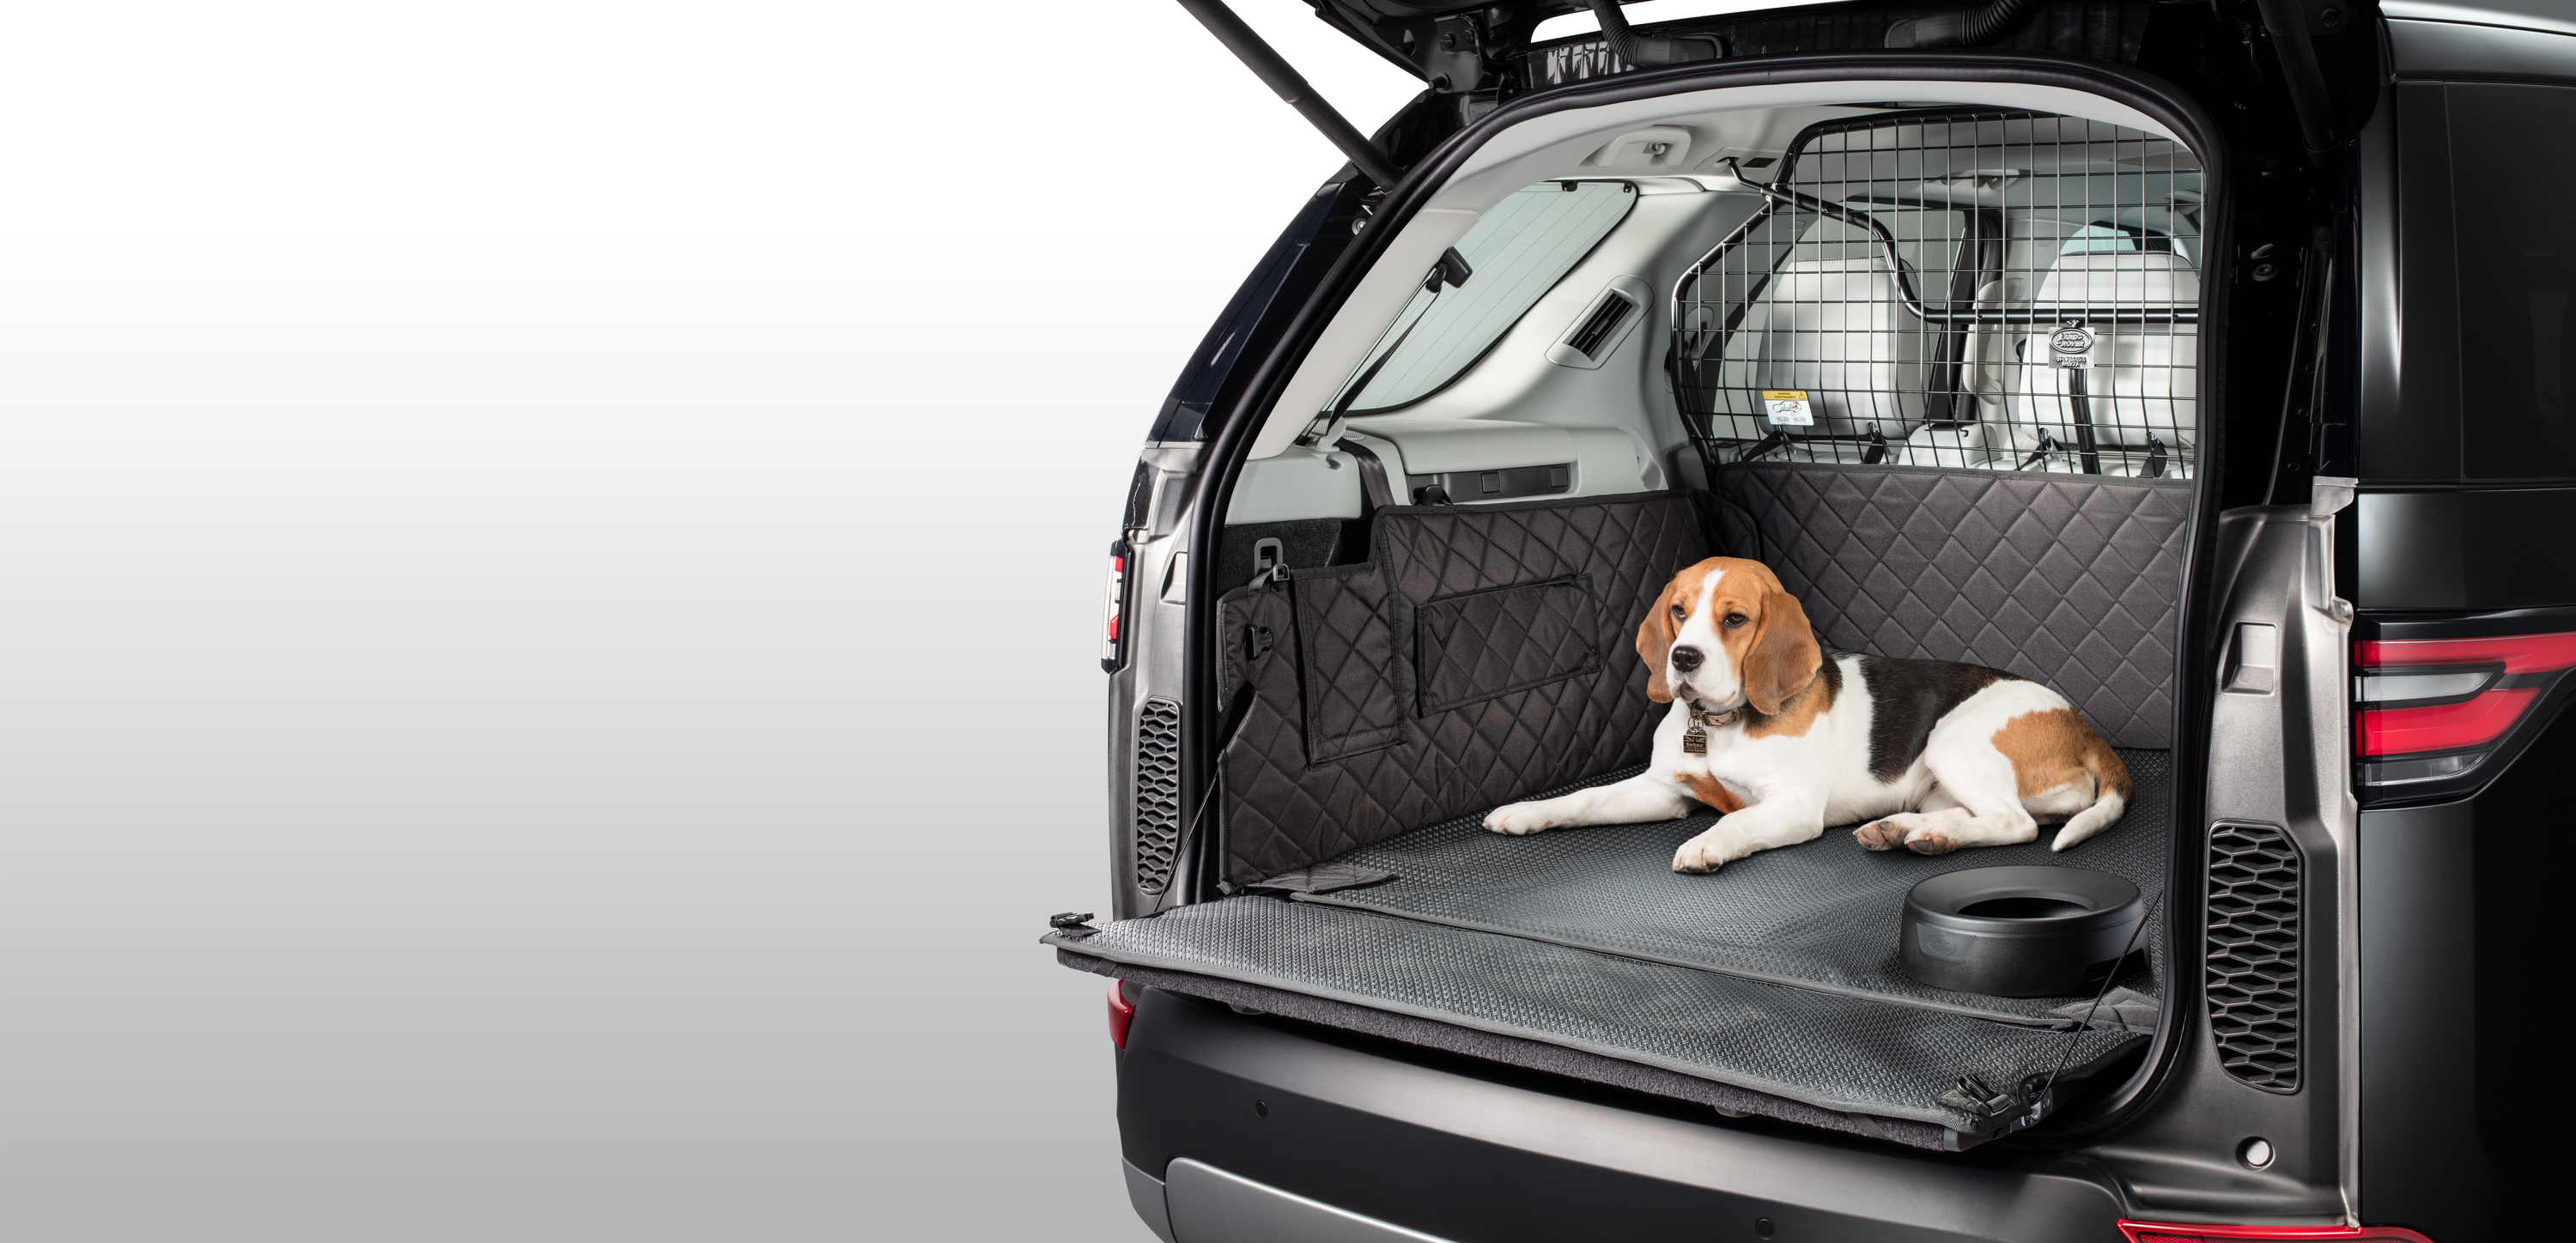 Автомобиль накидка собака. Перегородка для собак в багажник машины Мерседес в200. Клетка для собаки в багажник lc300. Решетка в багажник для собаки Discovery 4. Чехол в машину для перевозки собак в багажнике для Volvo xc40.